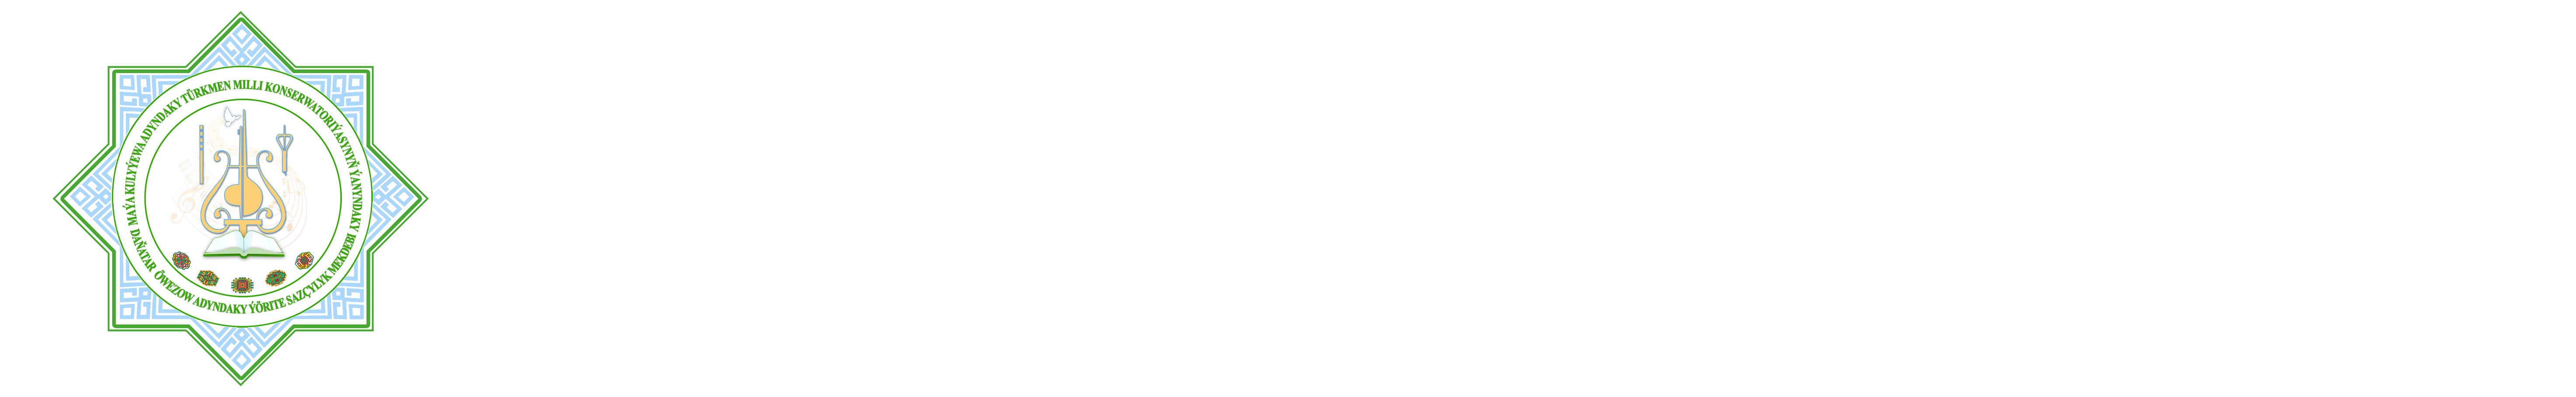 Daňatar Öwezow adyndaky Türkmen döwlet ýörite sazçylyk mekdebi